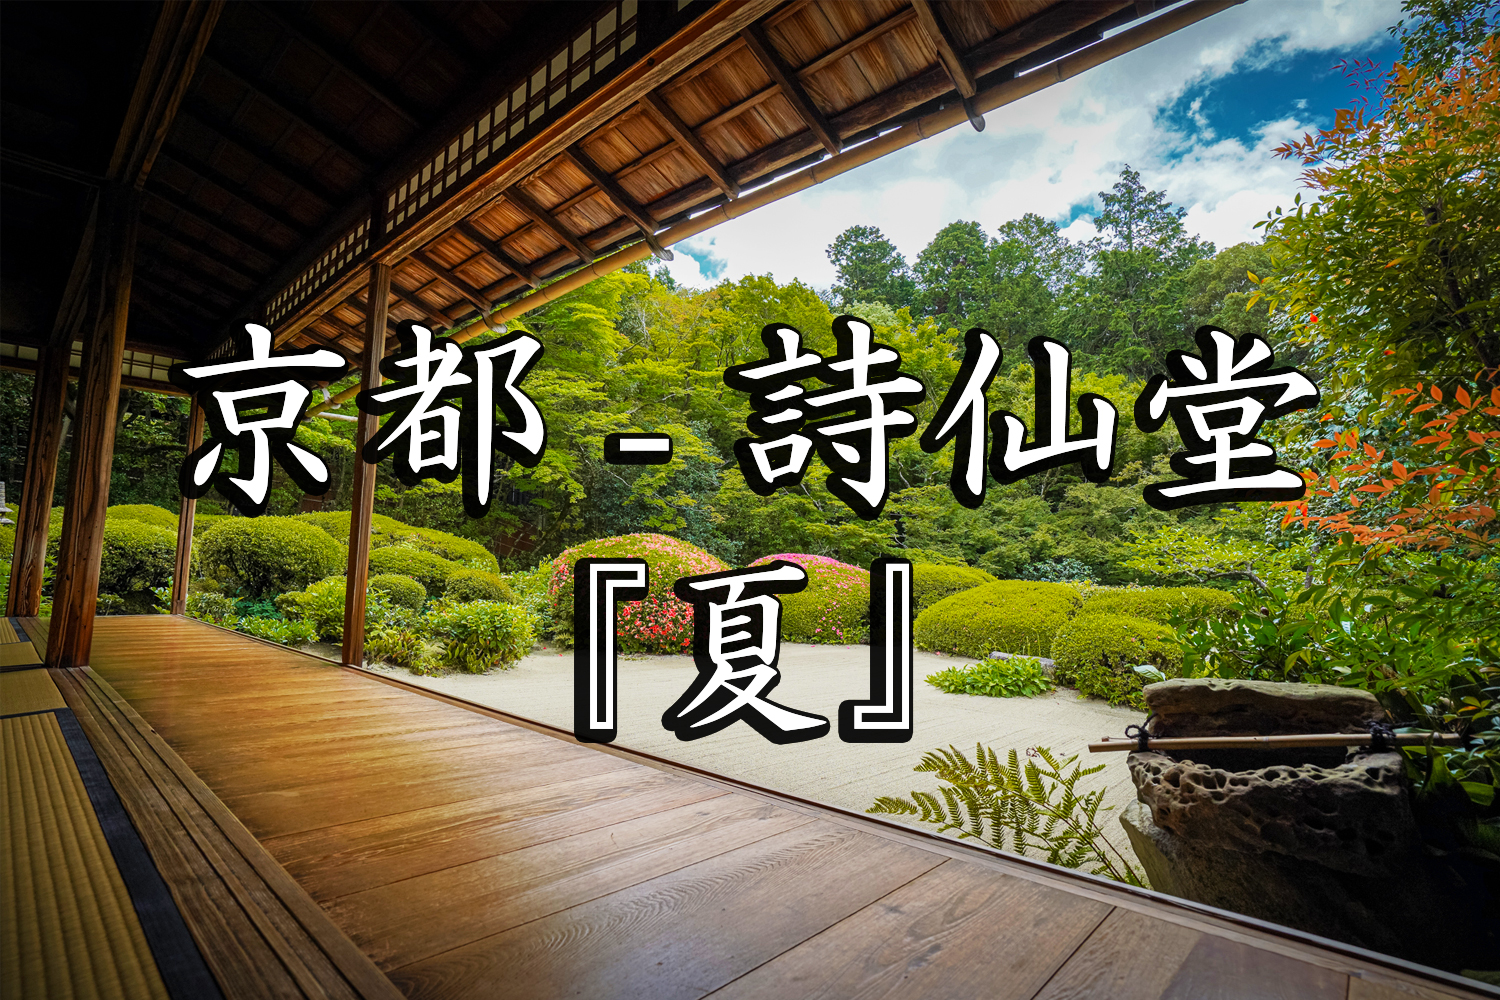 京都 詩仙堂(京都の夏、新緑の時期におすすめのスポット!写真の紹介、アクセス情報など) 写真や映像で紹介する関西・近畿の絶景カメラ・観光スポット